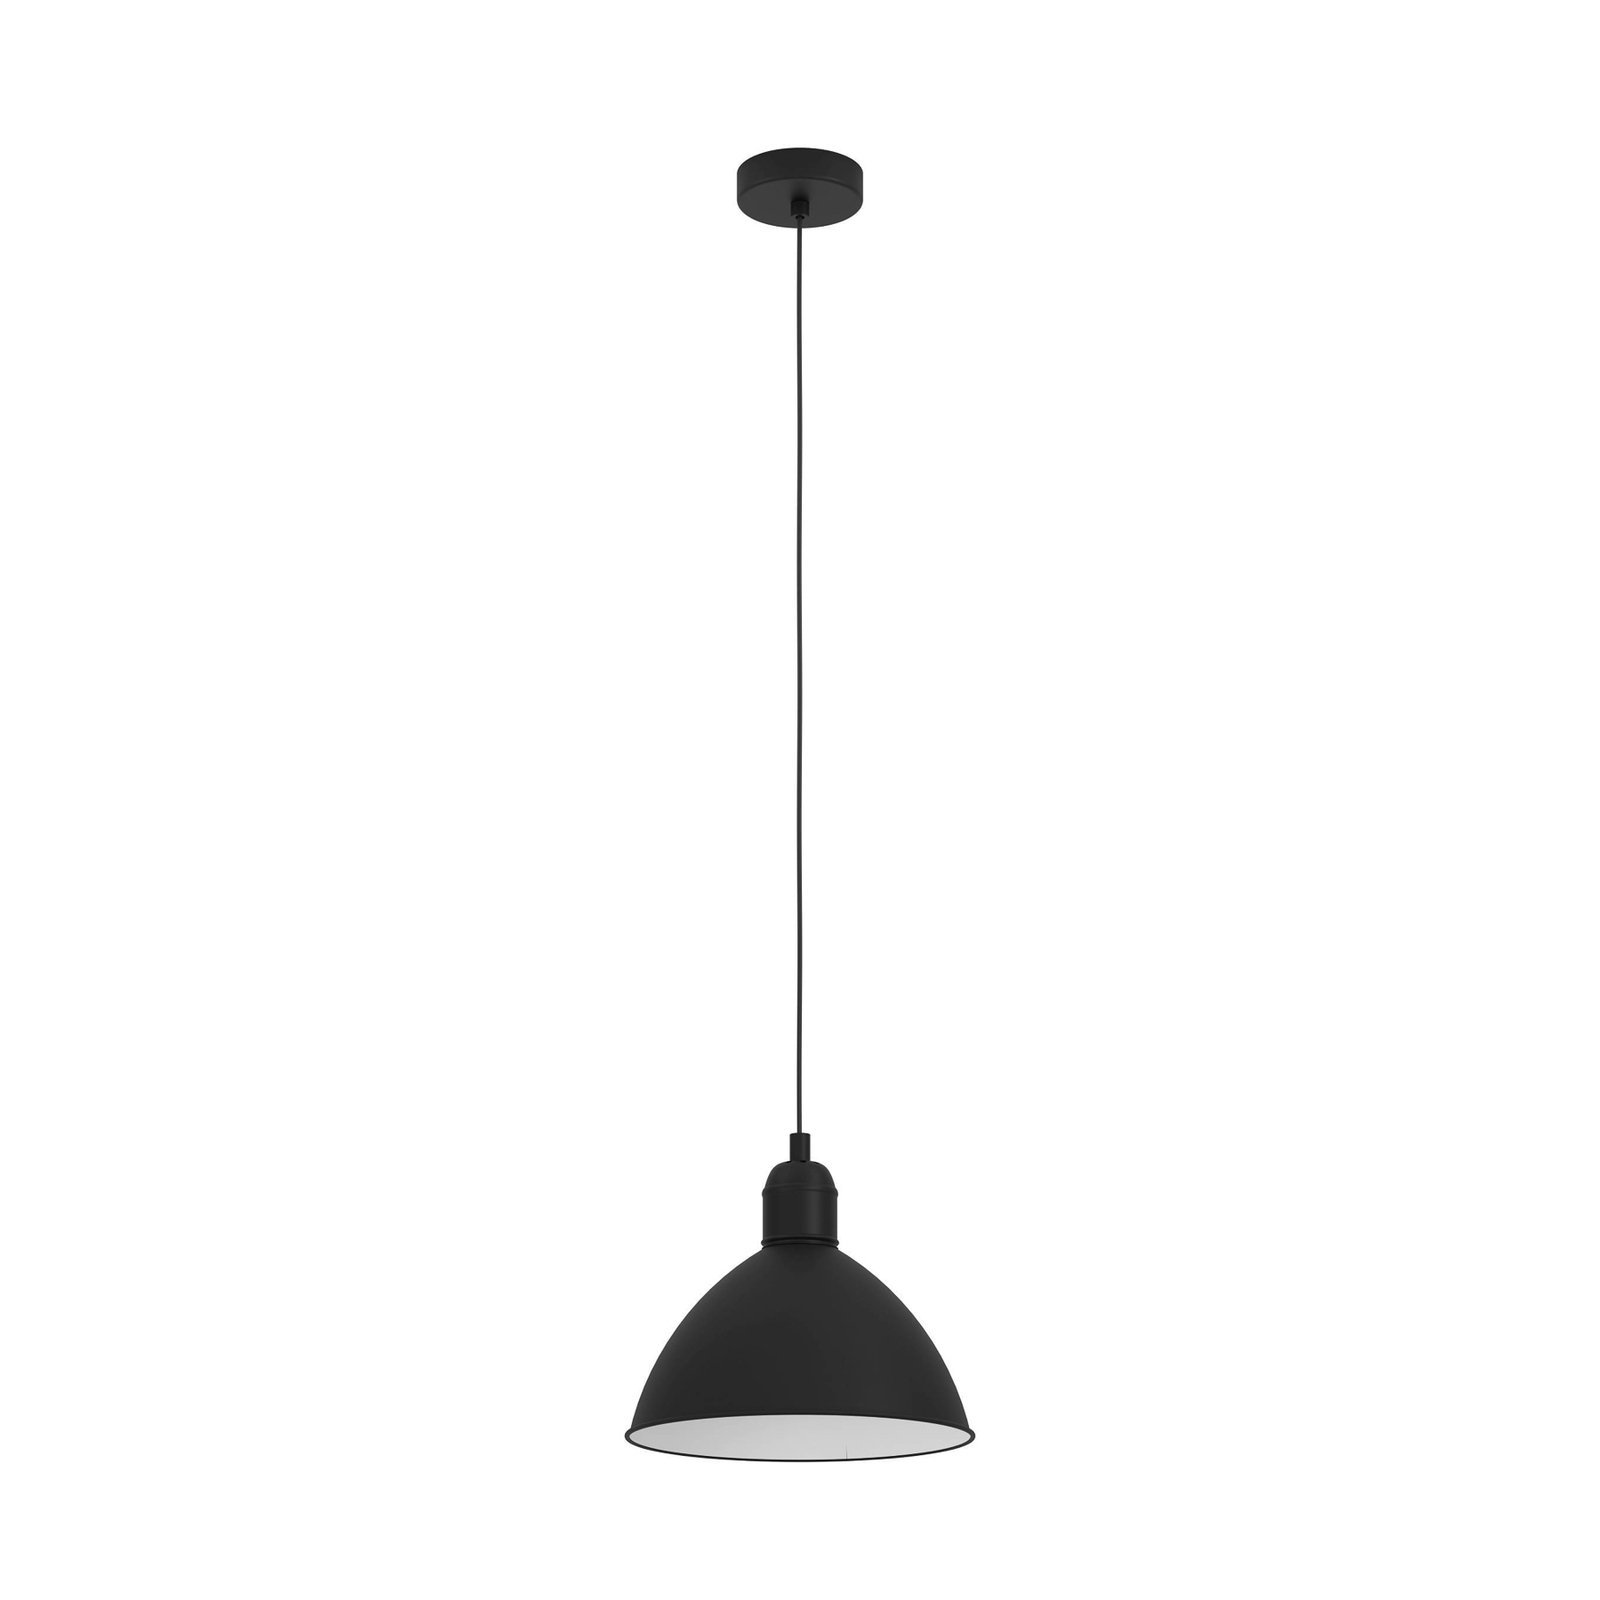 Priddy vintage pendant light, 1-bulb, black